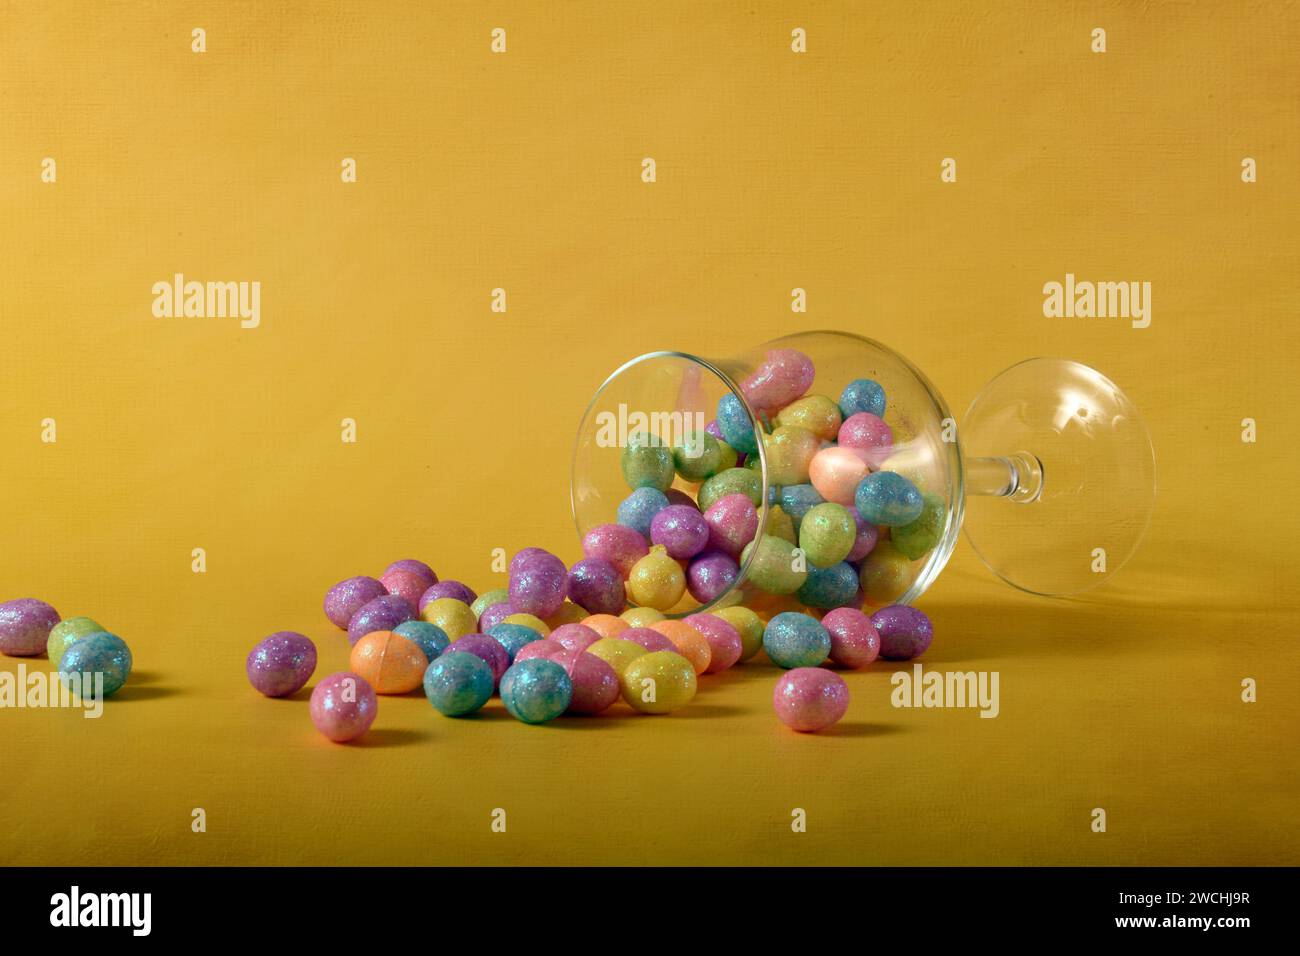 Uova di Pasqua dai colori pastello e glitter che fuoriescono da un bicchiere. Spazio di copia nella parte superiore della foto. Foto Stock